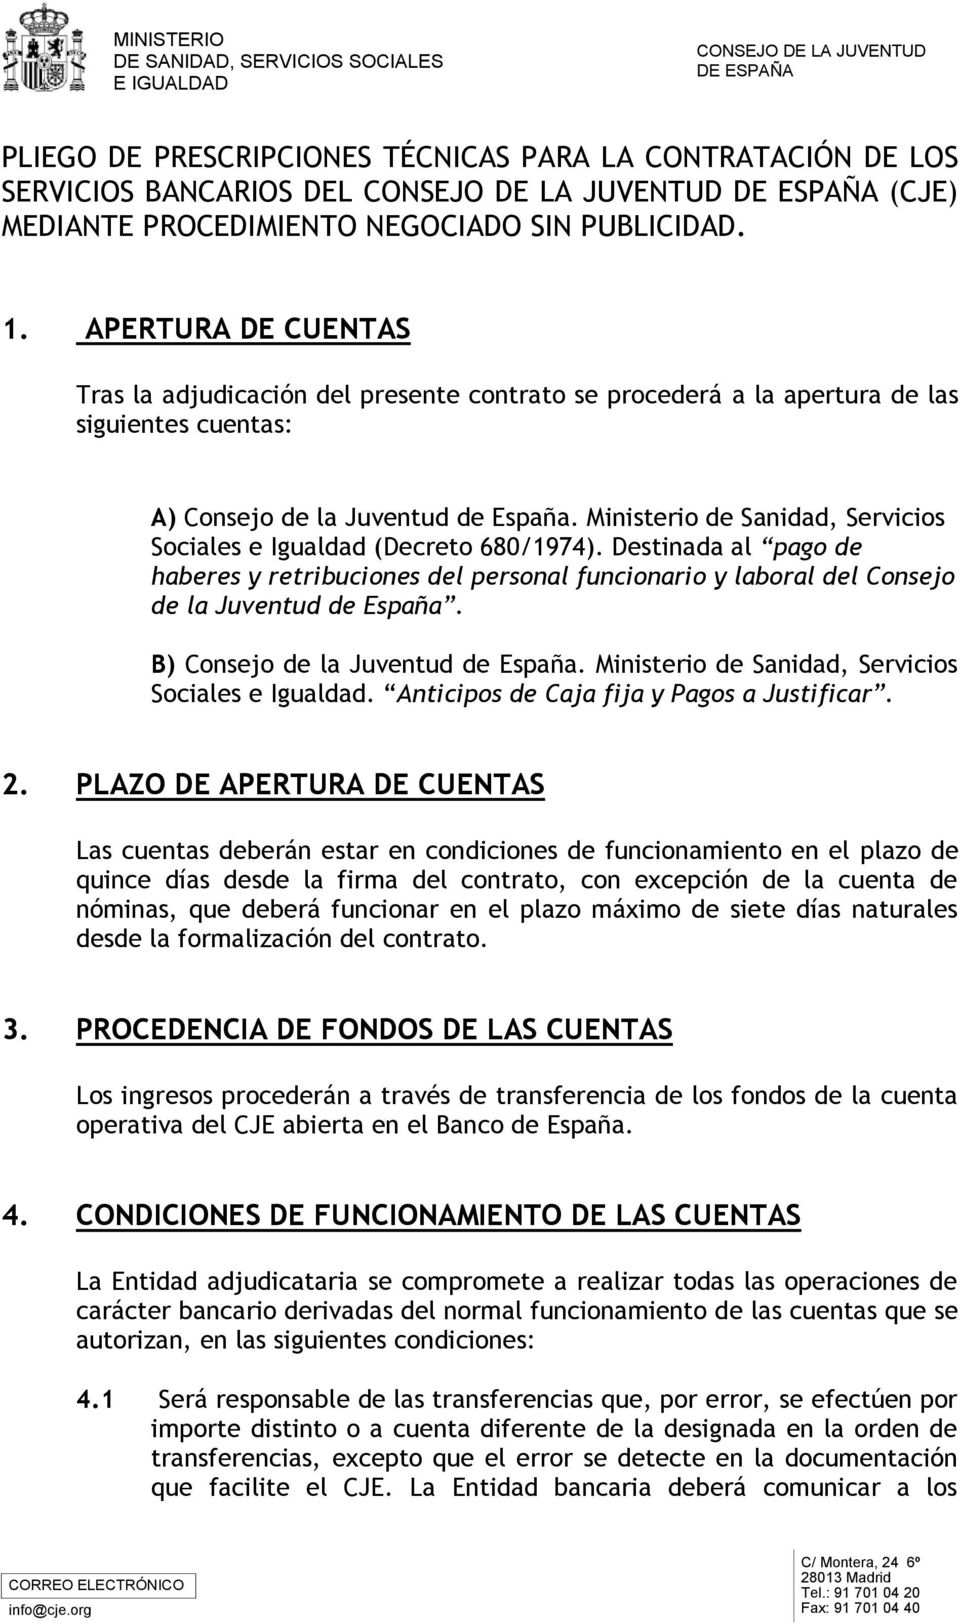 Ministerio de Sanidad, Servicios Sociales e Igualdad (Decreto 680/1974). Destinada al pago de haberes y retribuciones del personal funcionario y laboral del Consejo de la Juventud de España.